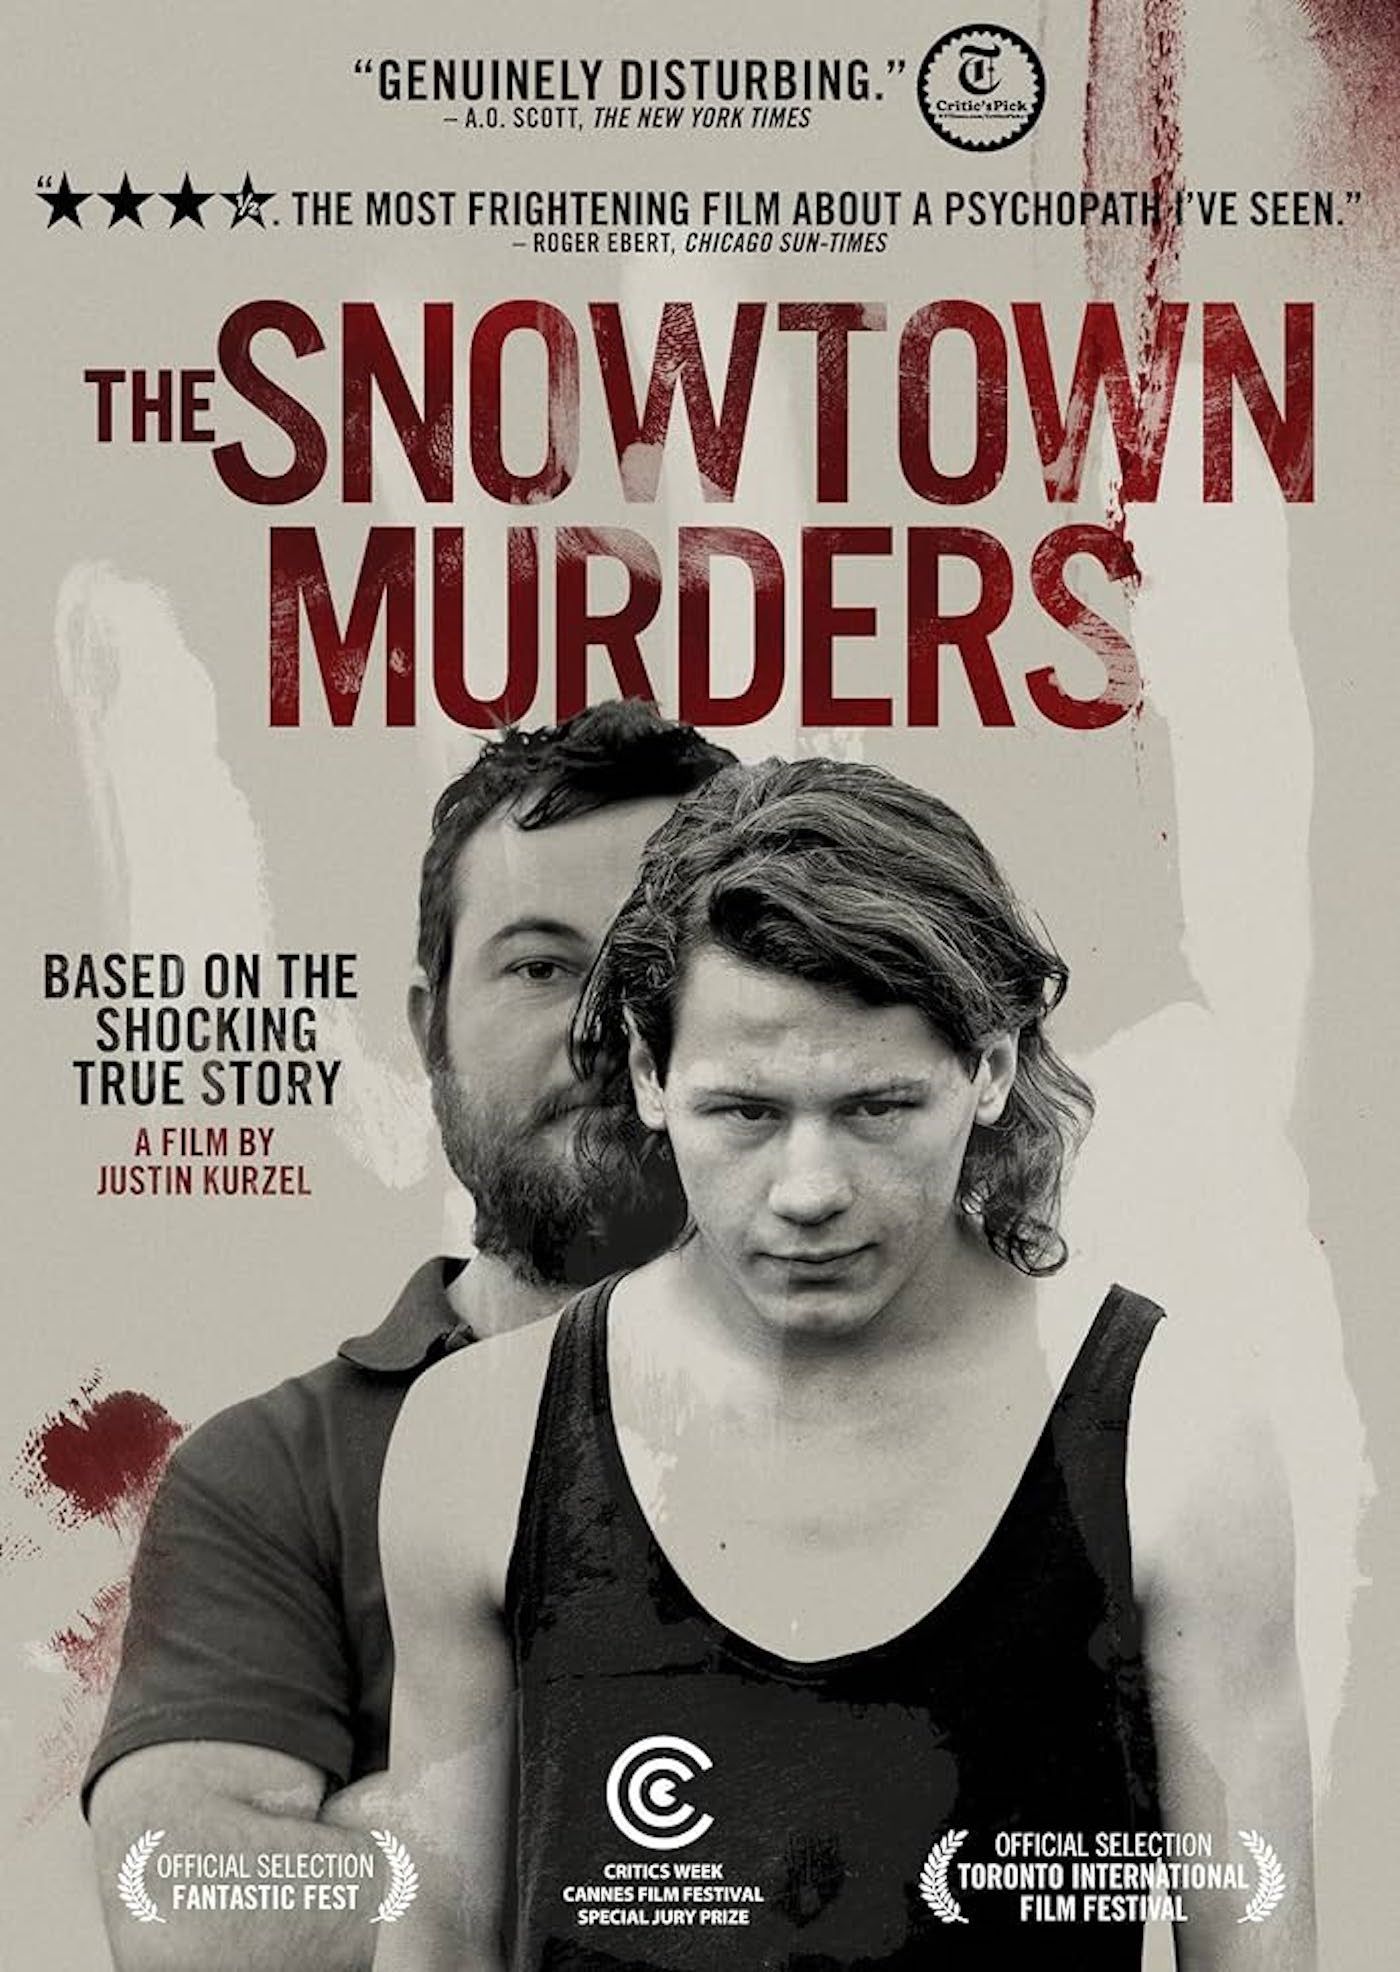 The Snowtowen Murders